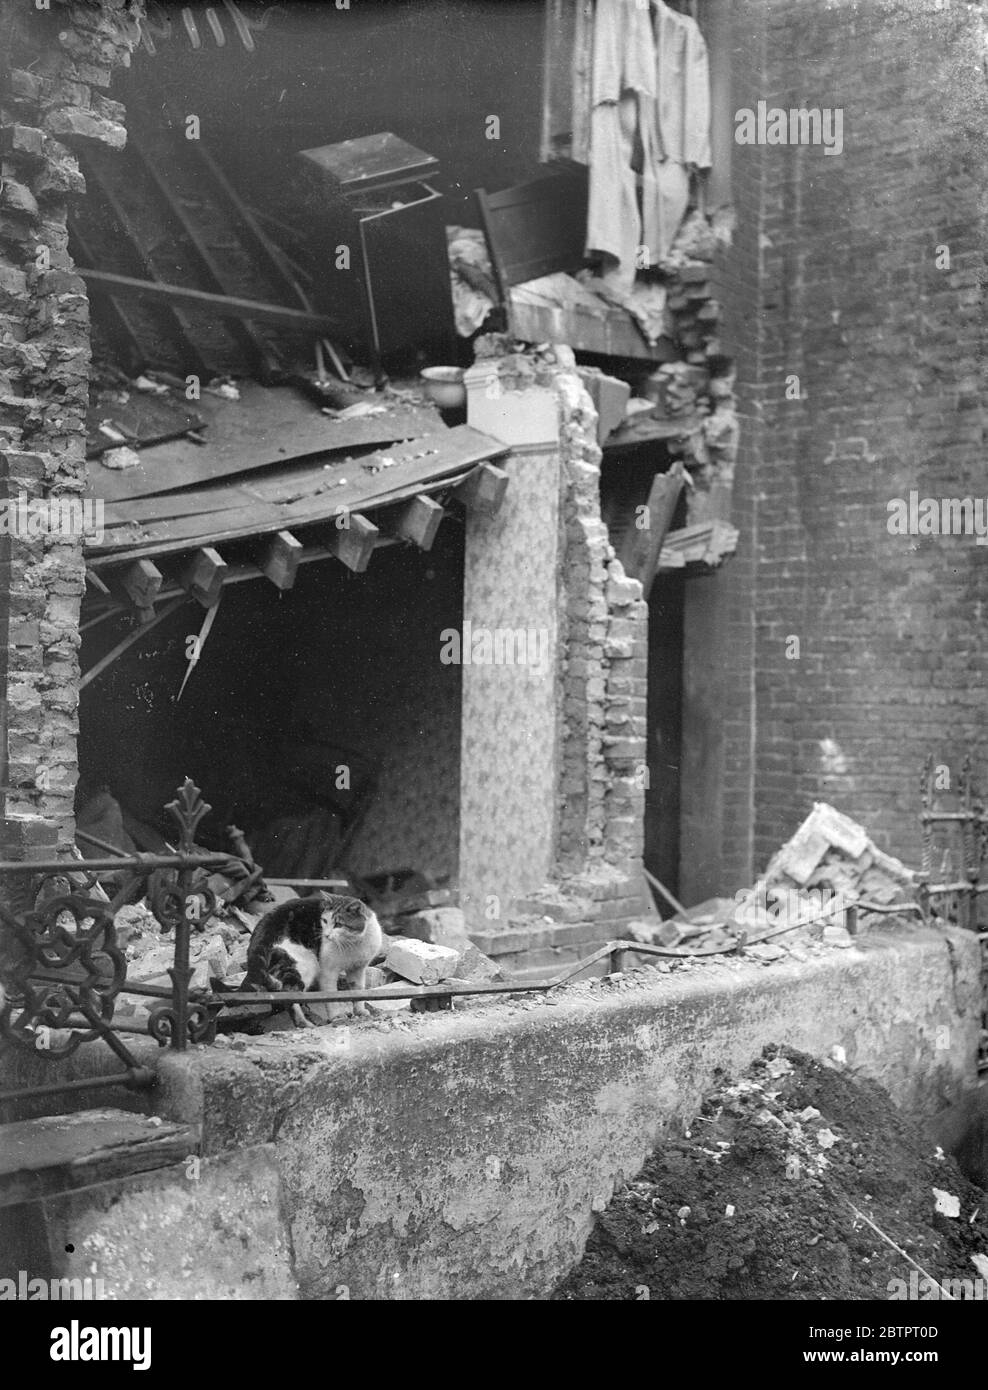 Überlebender inmitten der Ruinen. Londoner Haus durch Explosion zerstört. Ein Mann, John Clancy, 68 Jahre alt, wurde getötet und acht weitere Personen wurden verletzt, als eine Gasexplosion ein Haus in der De Morgan Road, Fulham, zerriss. Das Haus stürzte auf neun Personen ein, die 2 Familien gehörten, die das Haus besetzten, die meisten von ihnen mussten aus dem Schutt ausgegraben werden. Immer ins Krankenhaus gebracht und eingesperrt. Foto zeigt, eine Katze, die am Haus lebte Wunder inmitten der Ruinen der Explosion. 17. November 1937 Stockfoto